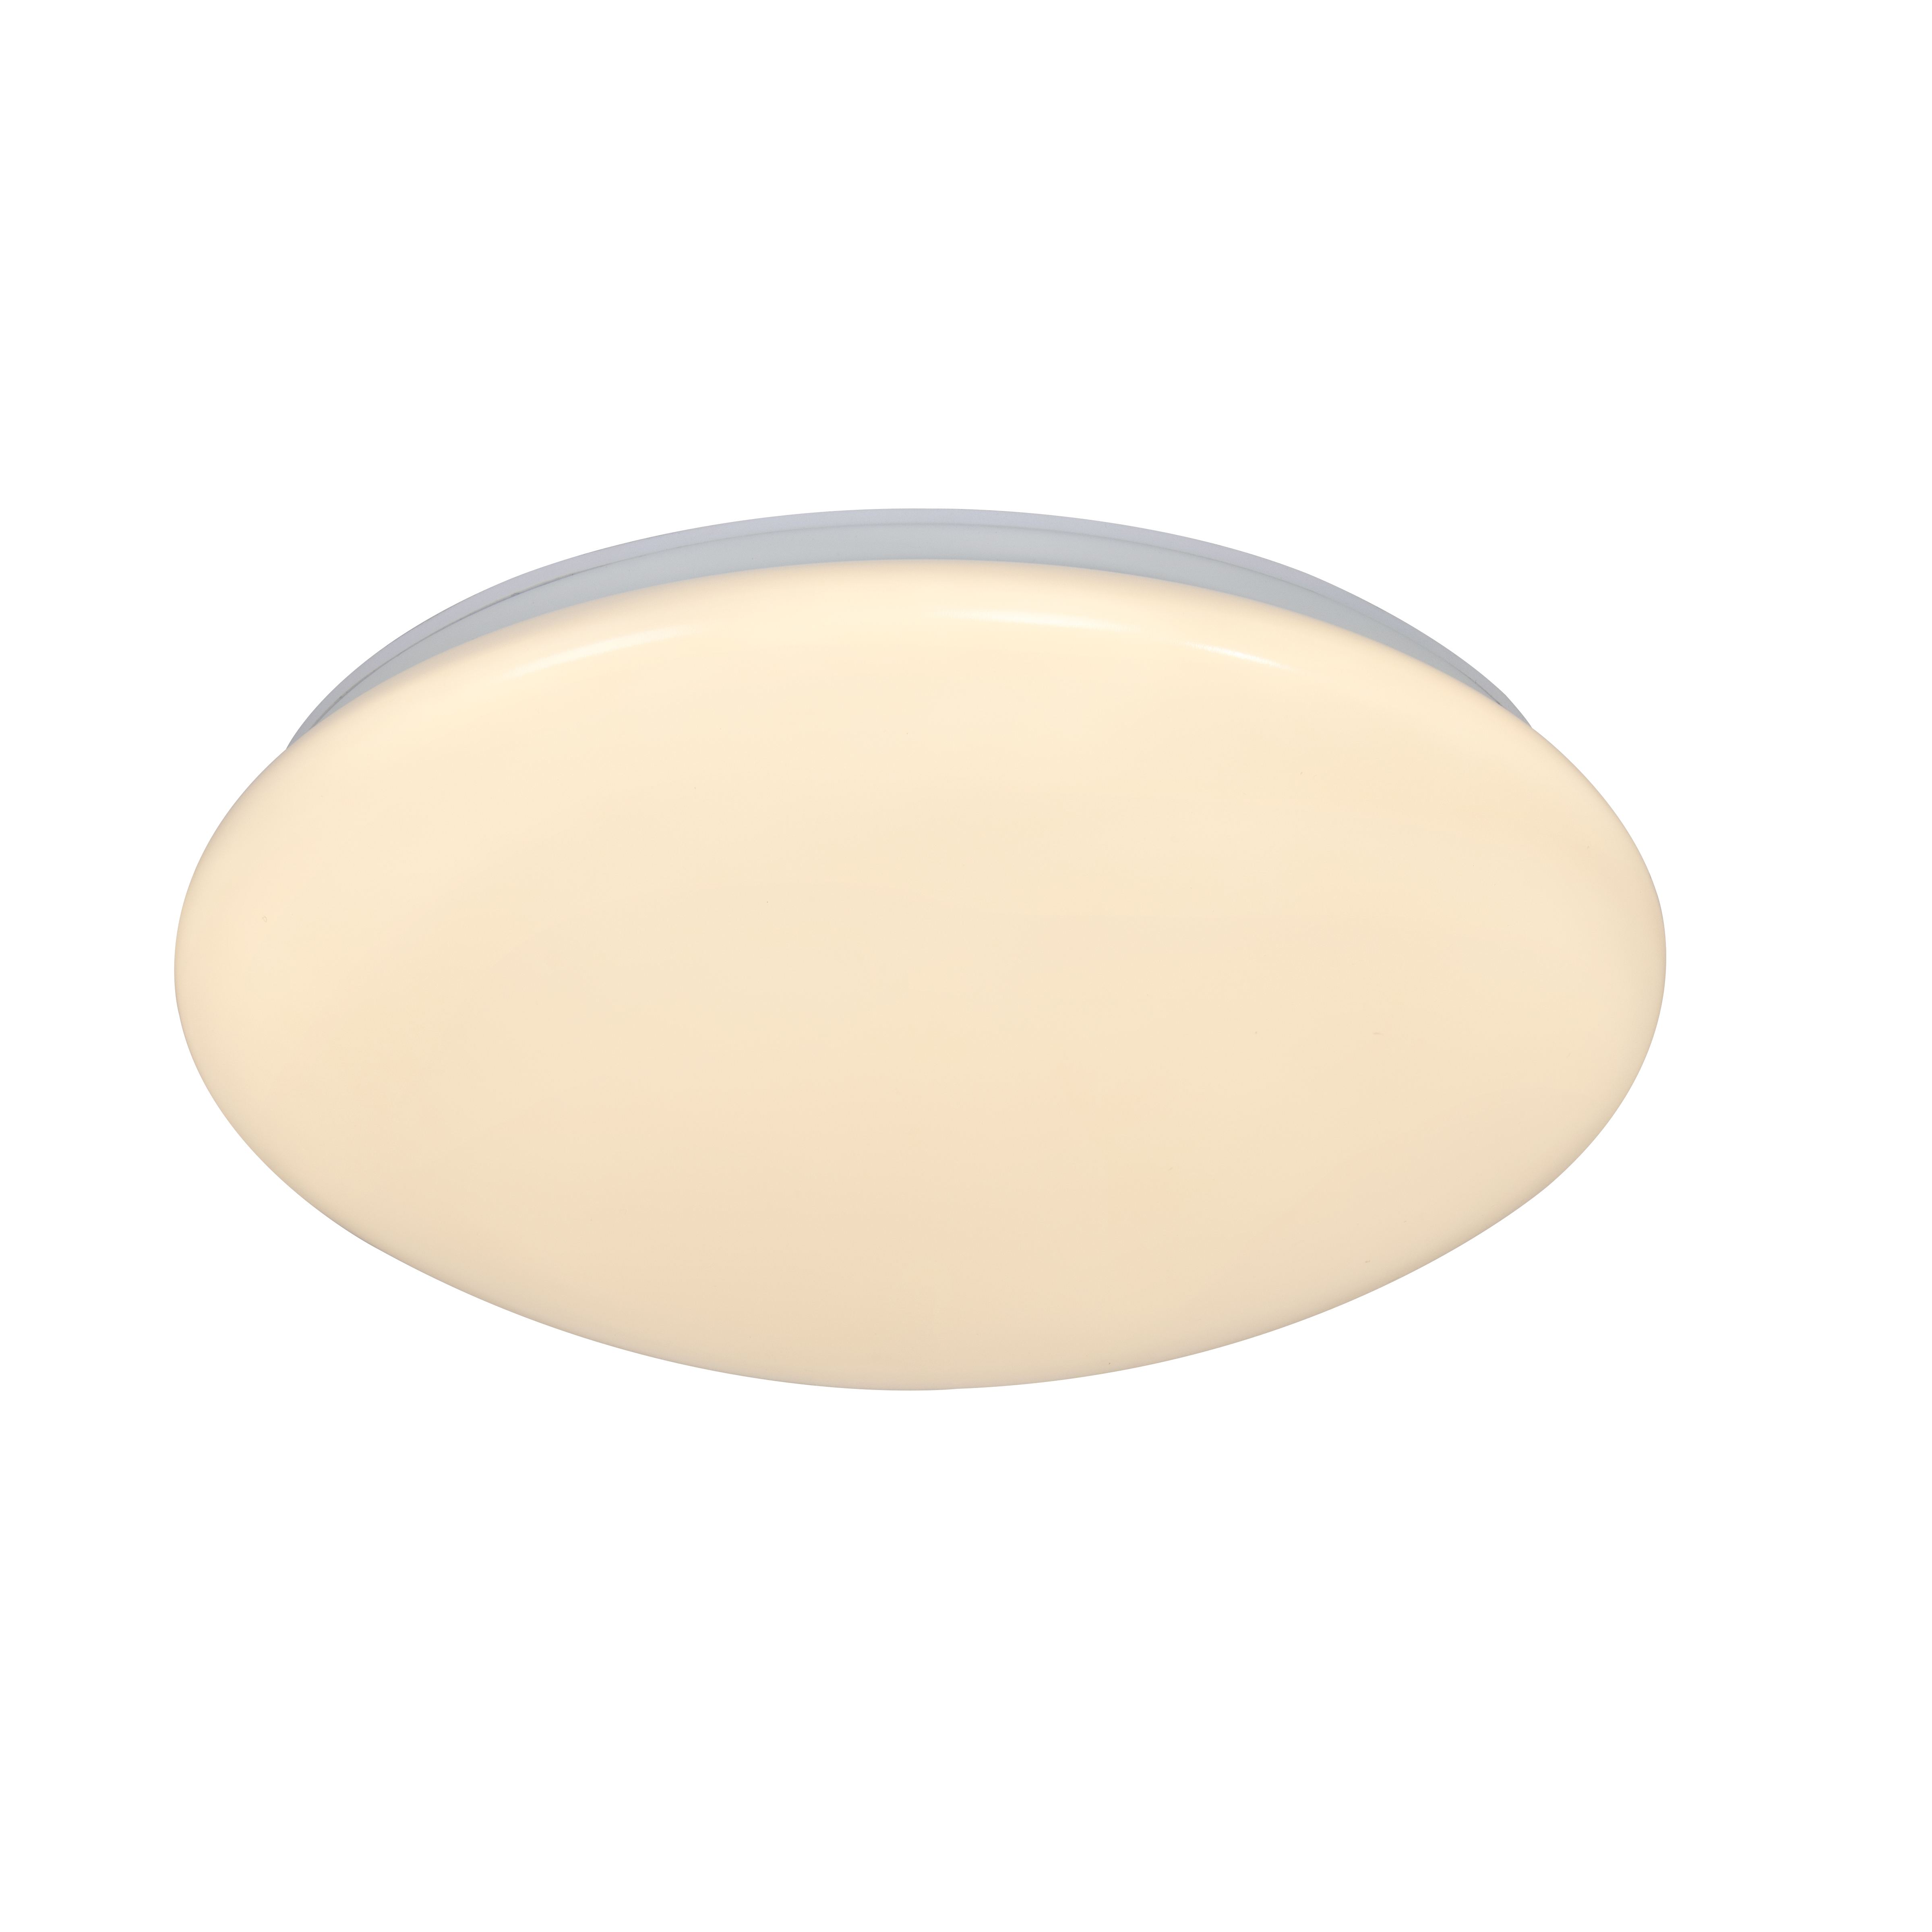 Montone 36 | Ceiling light | White